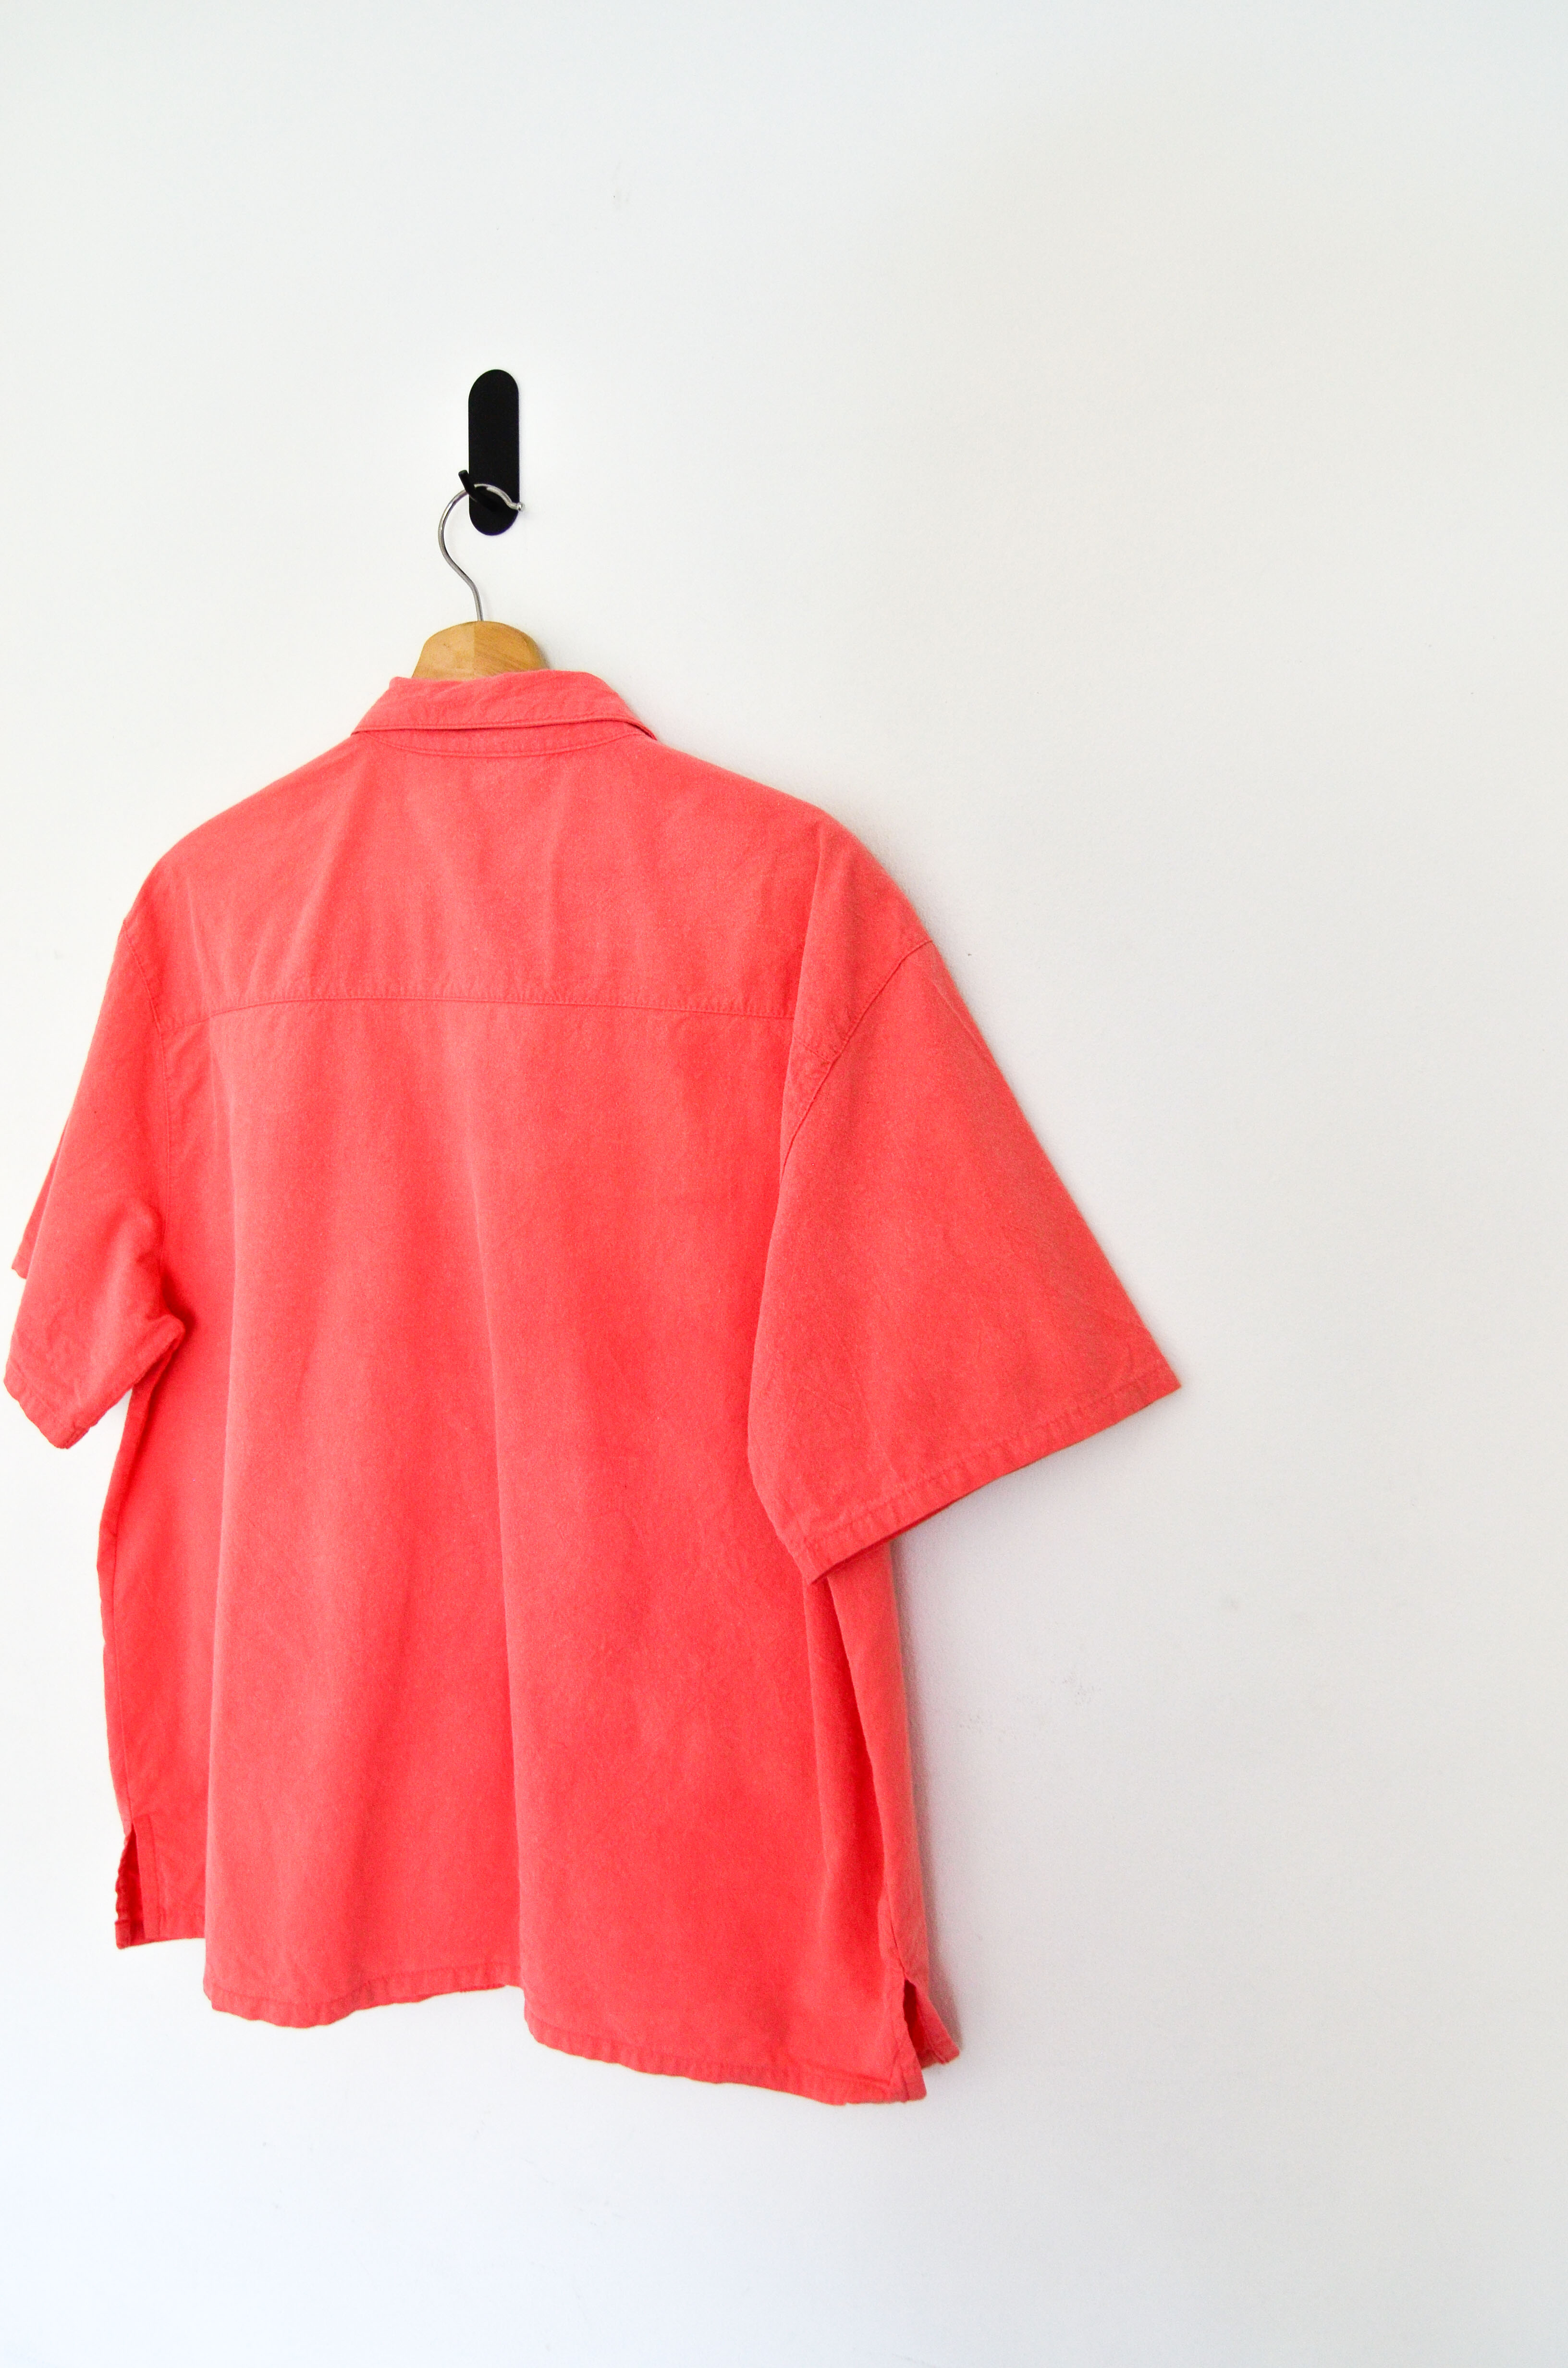 Camisa coral cotton bordada